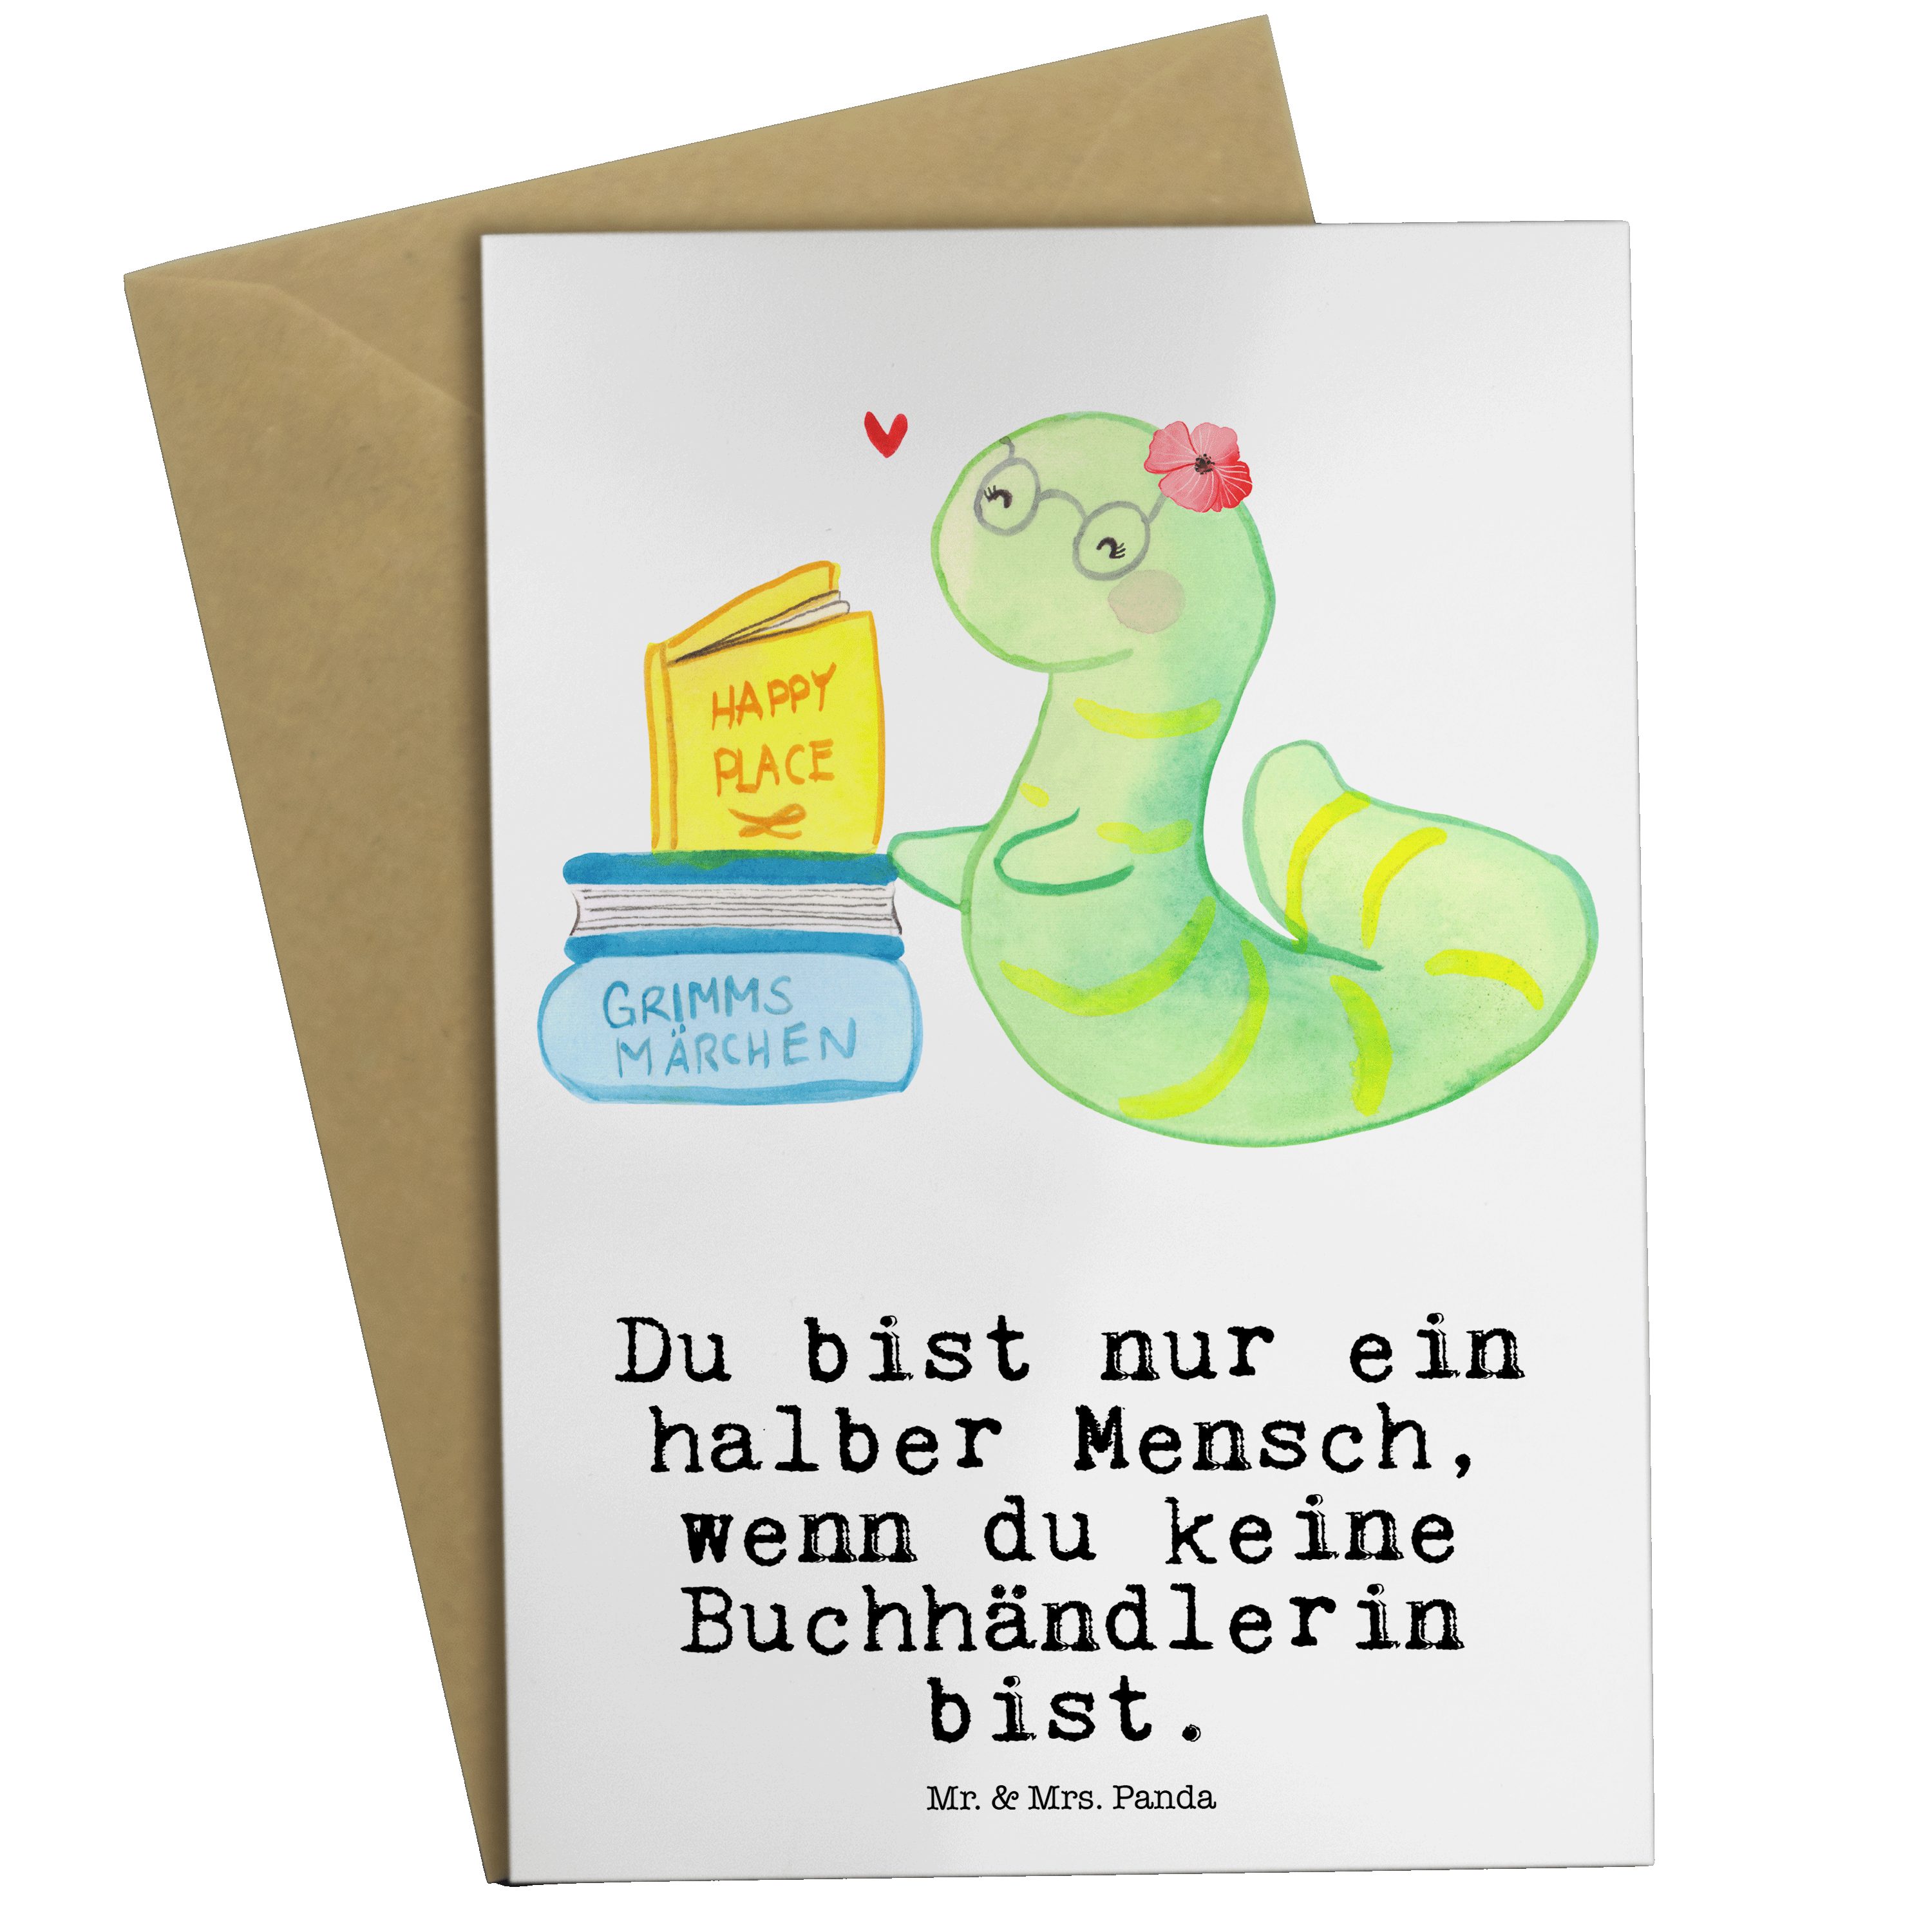 Mr. & Mrs. Panda Grußkarte Buchhändlerin mit Herz - Weiß - Geschenk, Geburtstagskarte, Firma, Ka